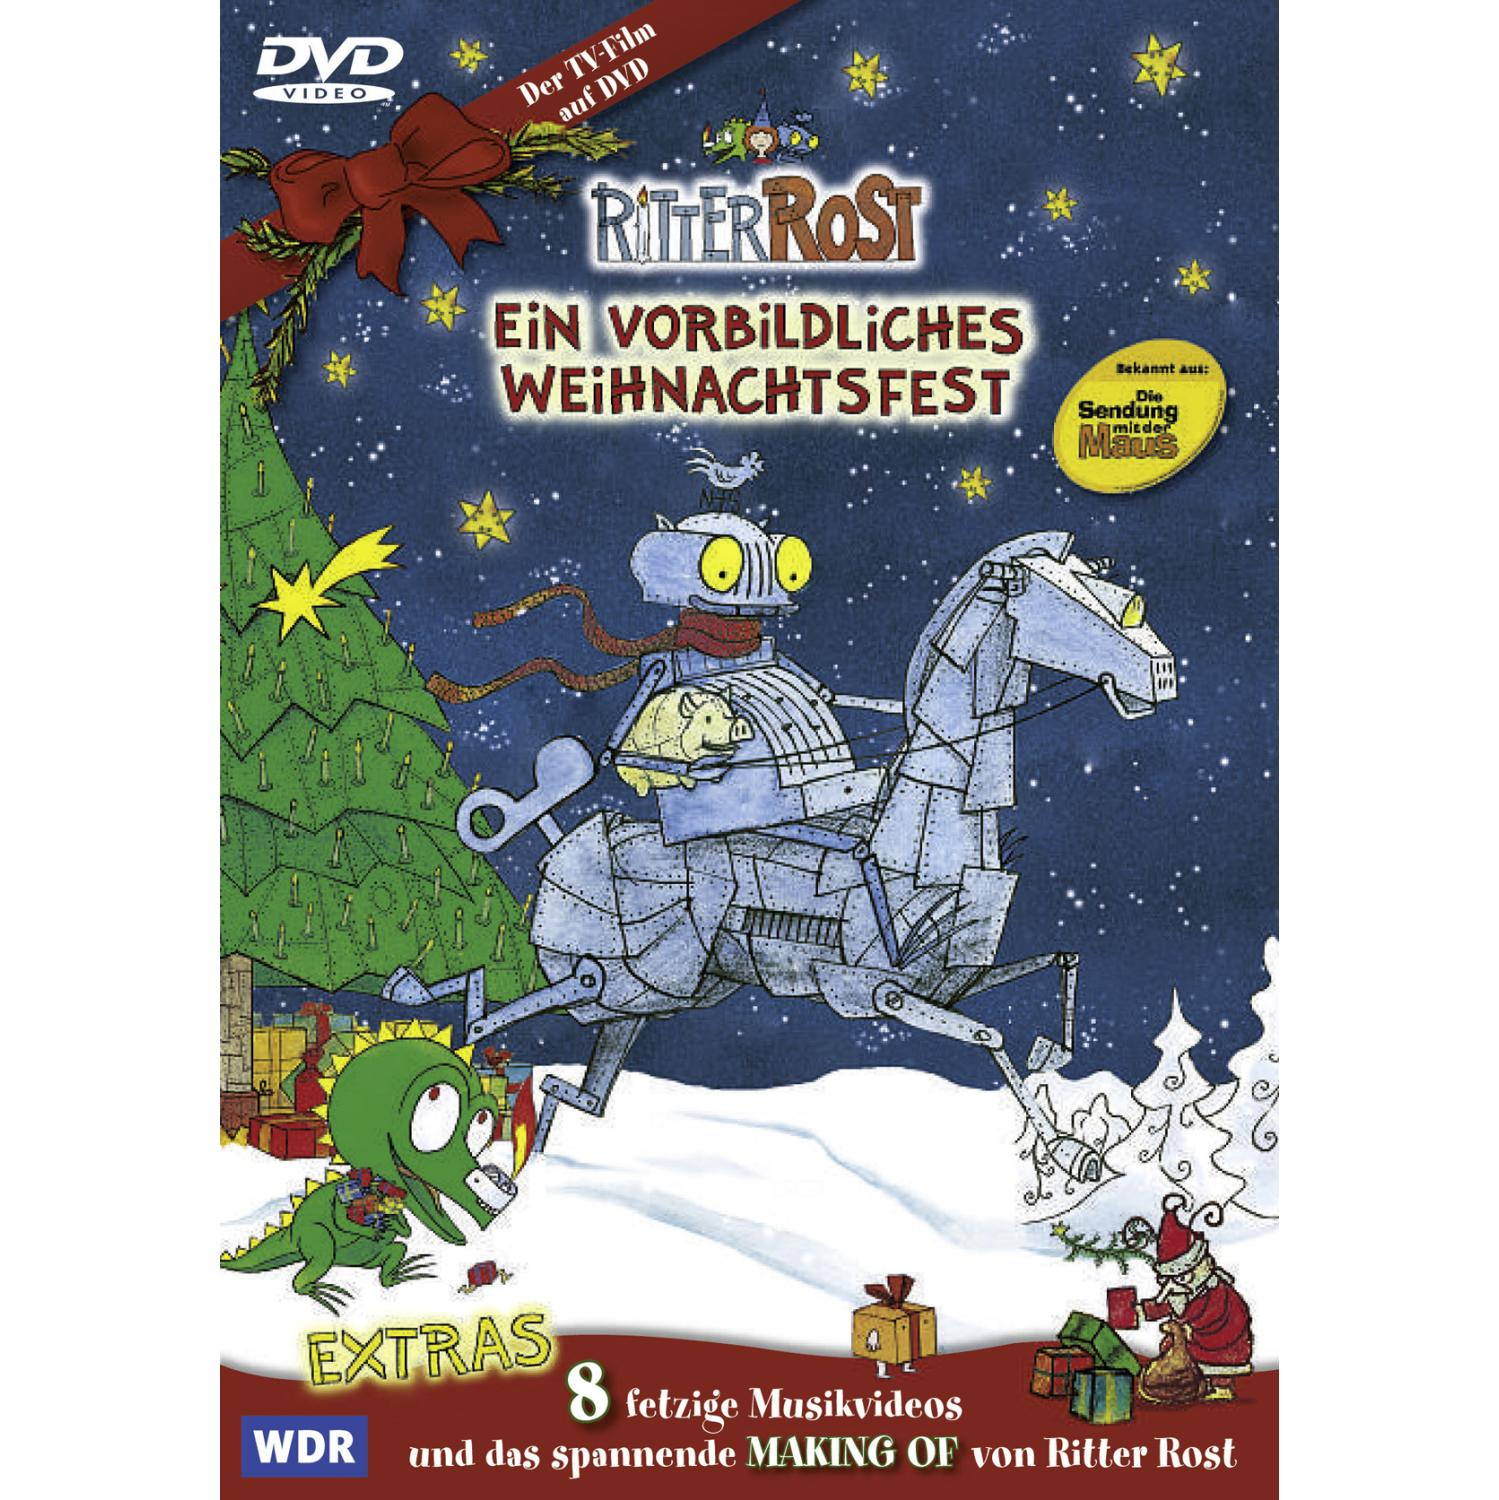 EIN DVD WEIHNACHTSFEST VORBILDLICHES